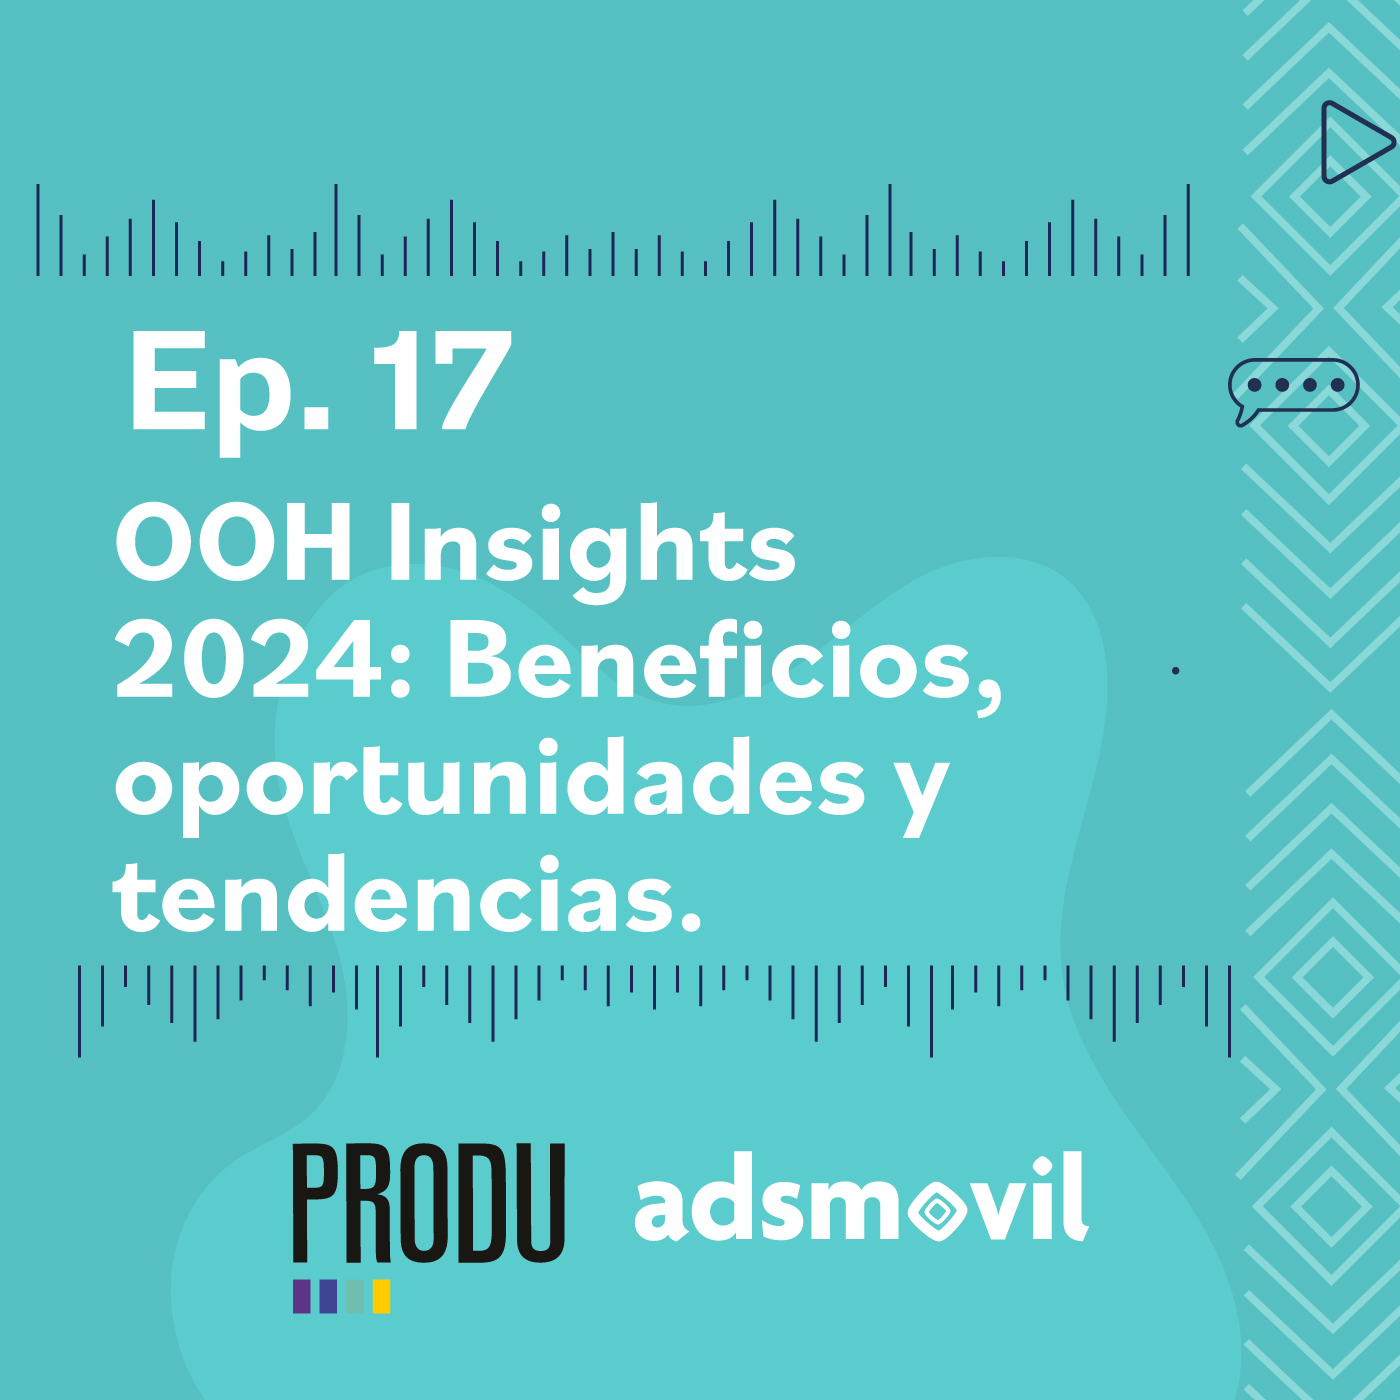 Ep 17 - OOH Insights 2024: Beneficios, oportunidades y tendencias